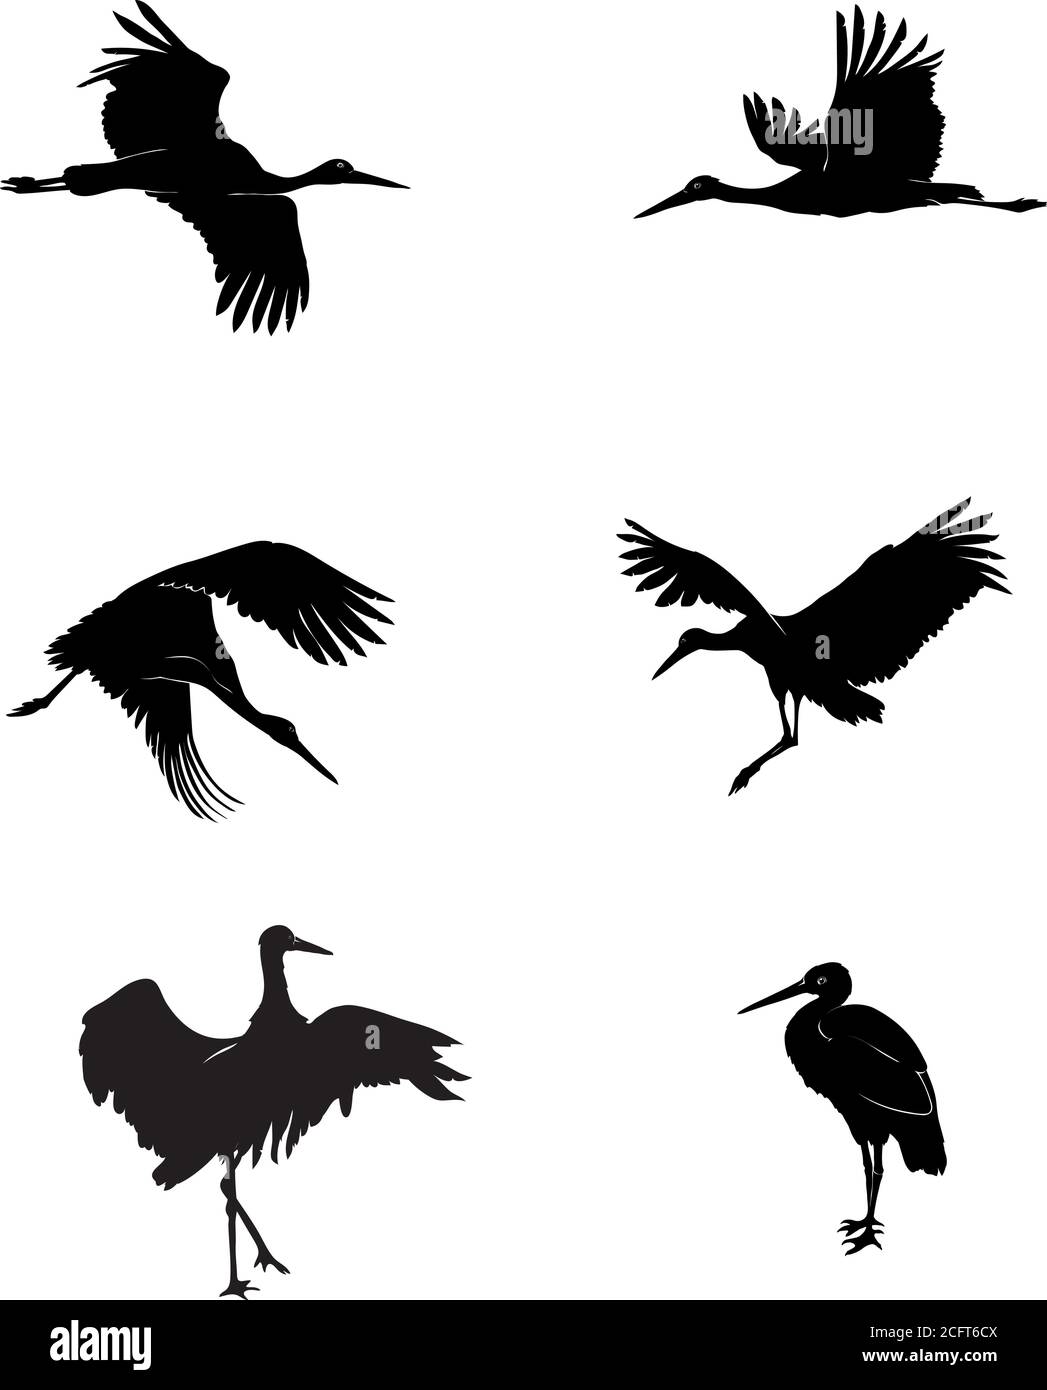 cerdo, pájaro, grúa, blanco, negro, vector, ilustración, gráfico, diseño, imagen, aislado, pico, ala, alas, plumas, plumas, naturaleza Ilustración del Vector